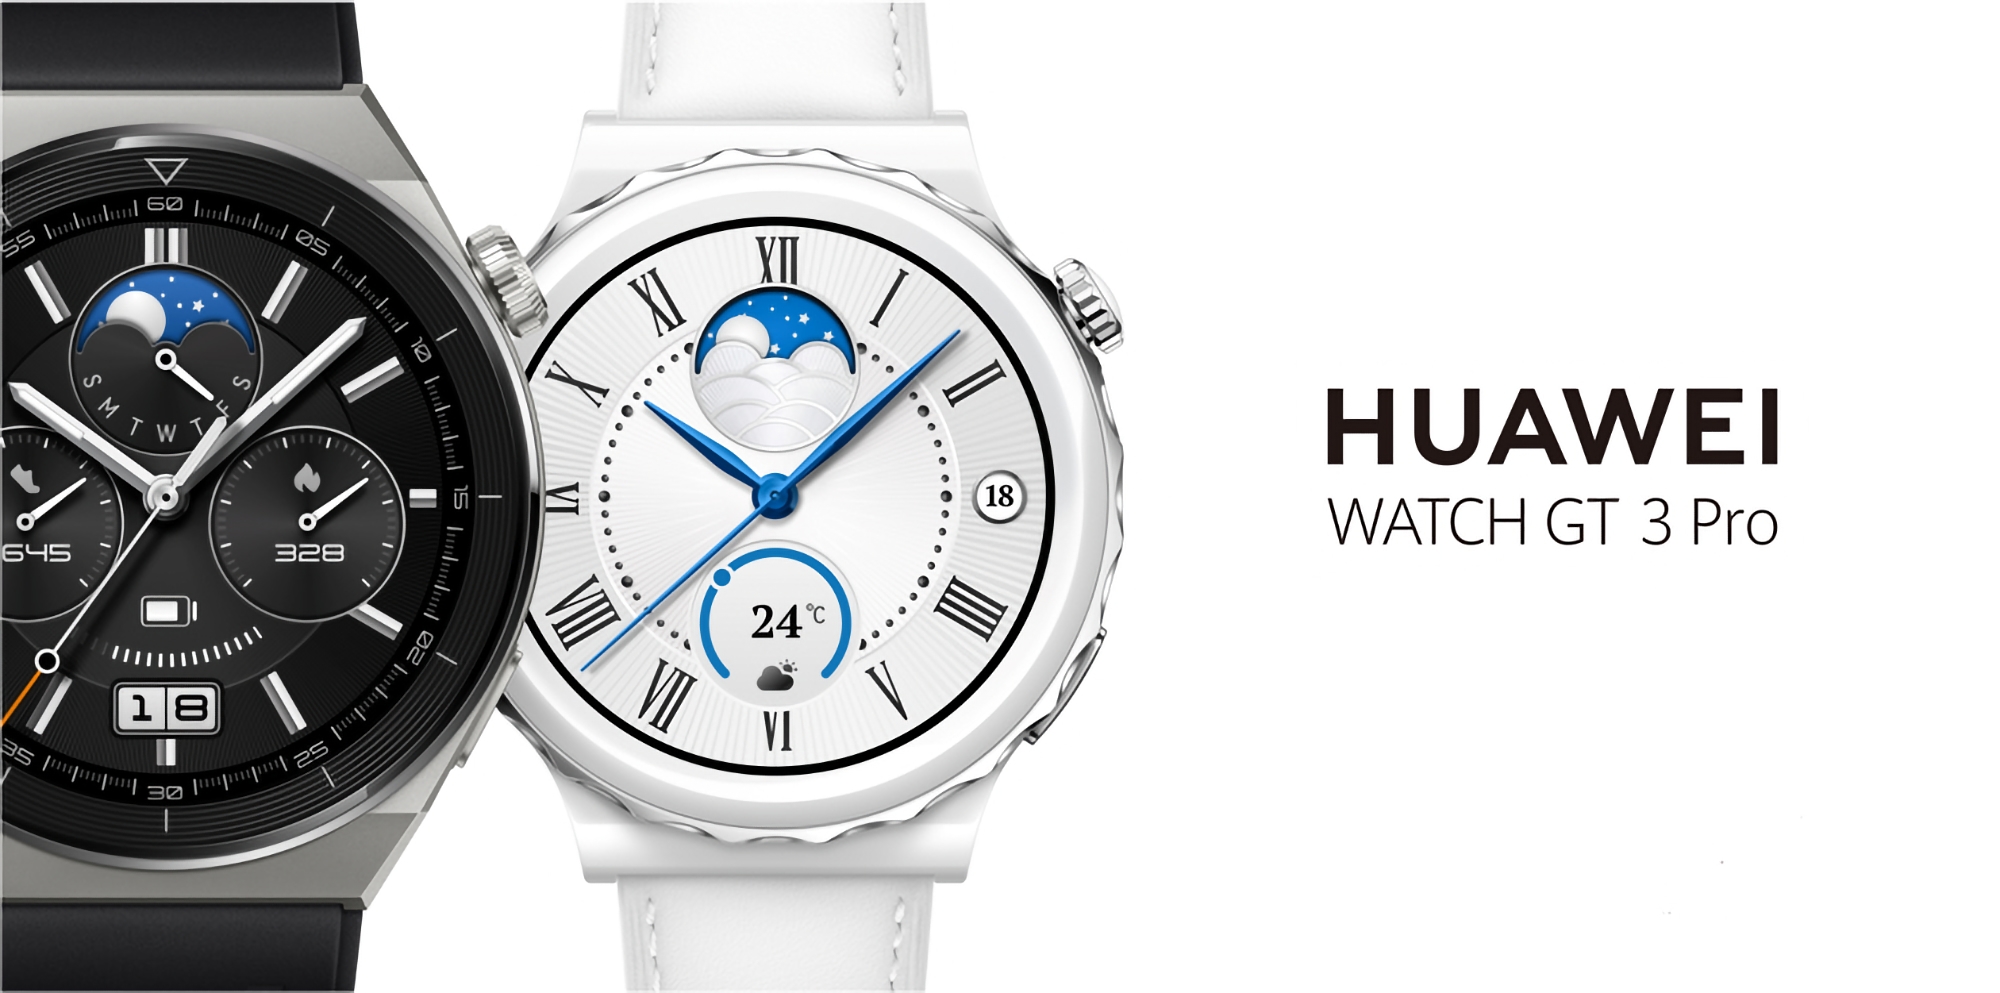 La Huawei Watch GT 3 Pro a reçu une nouvelle version logicielle sur le marché mondial.